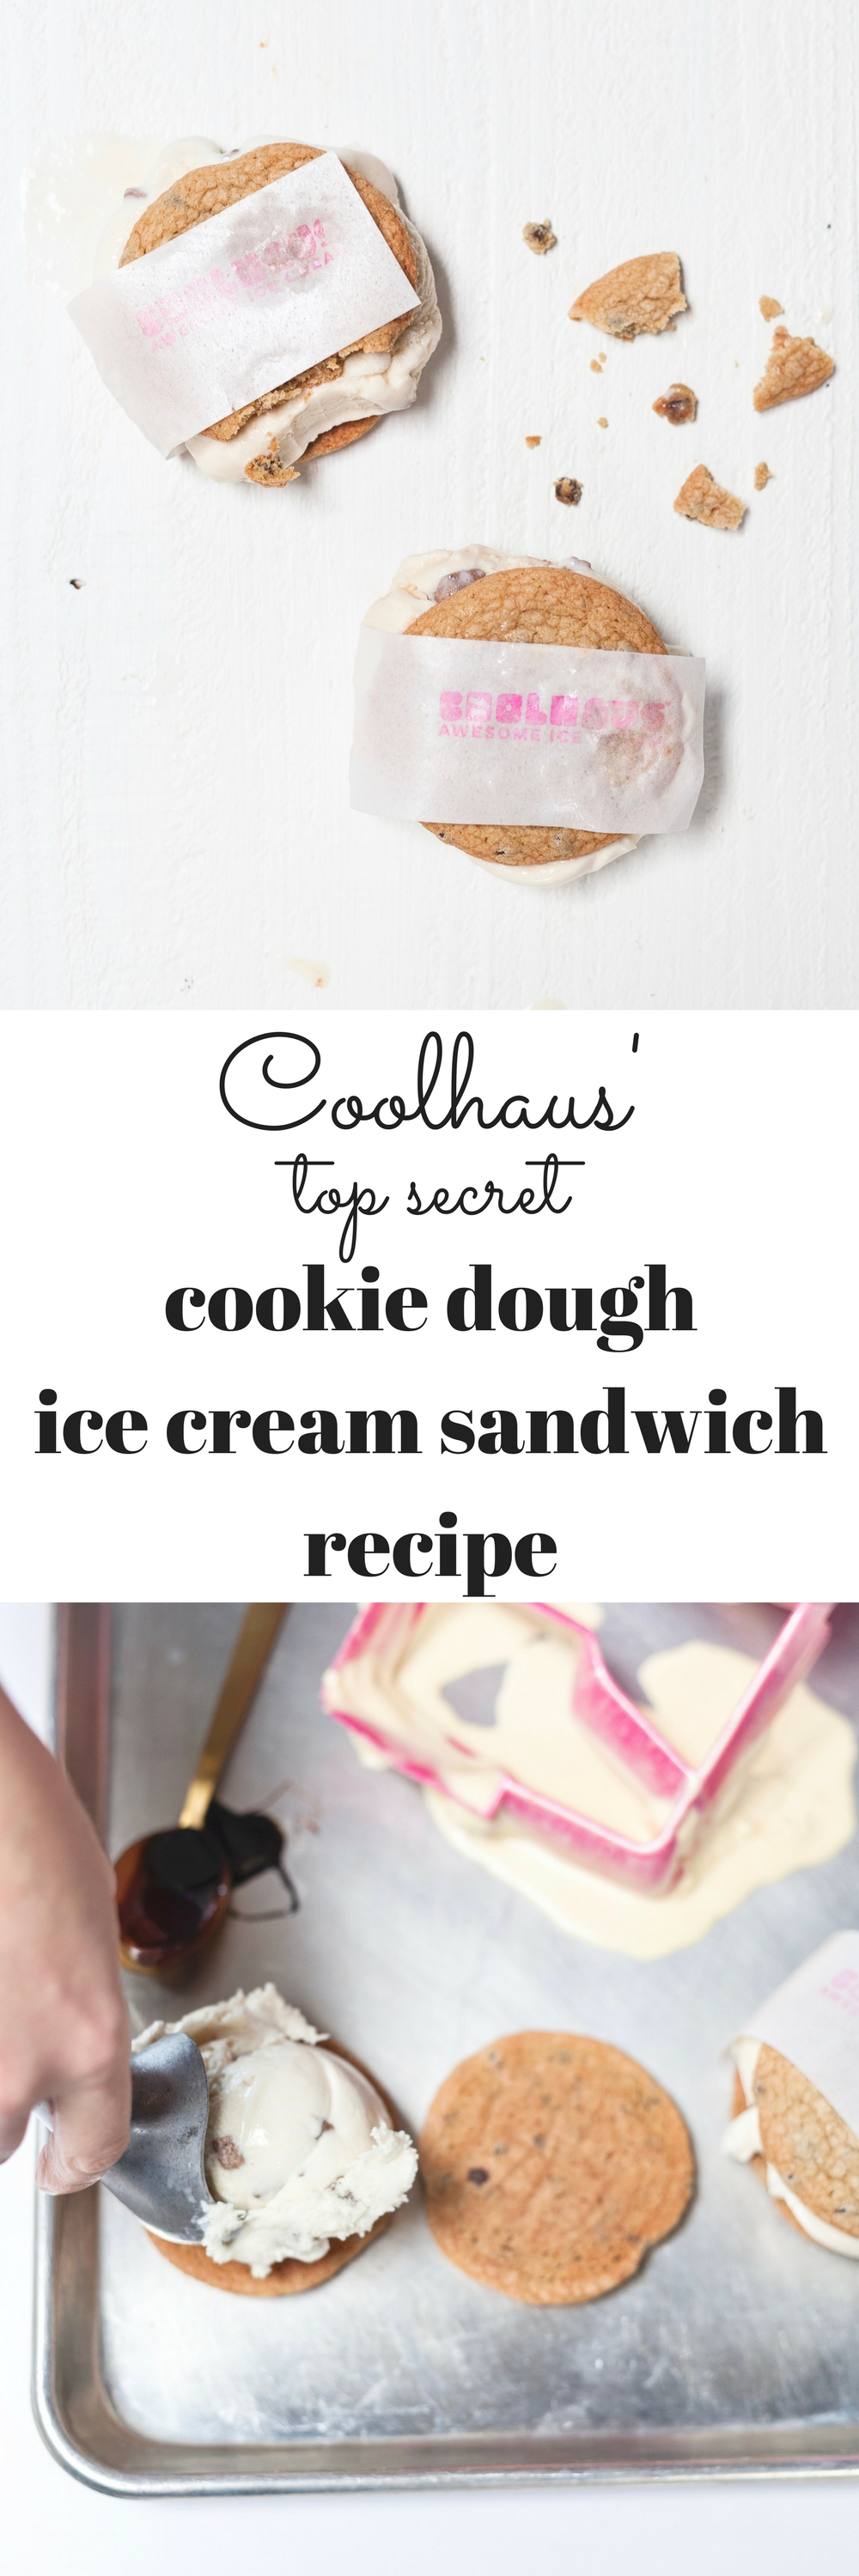 Coolhaus Top Secret Cookie Dough Ice Cream Recipe